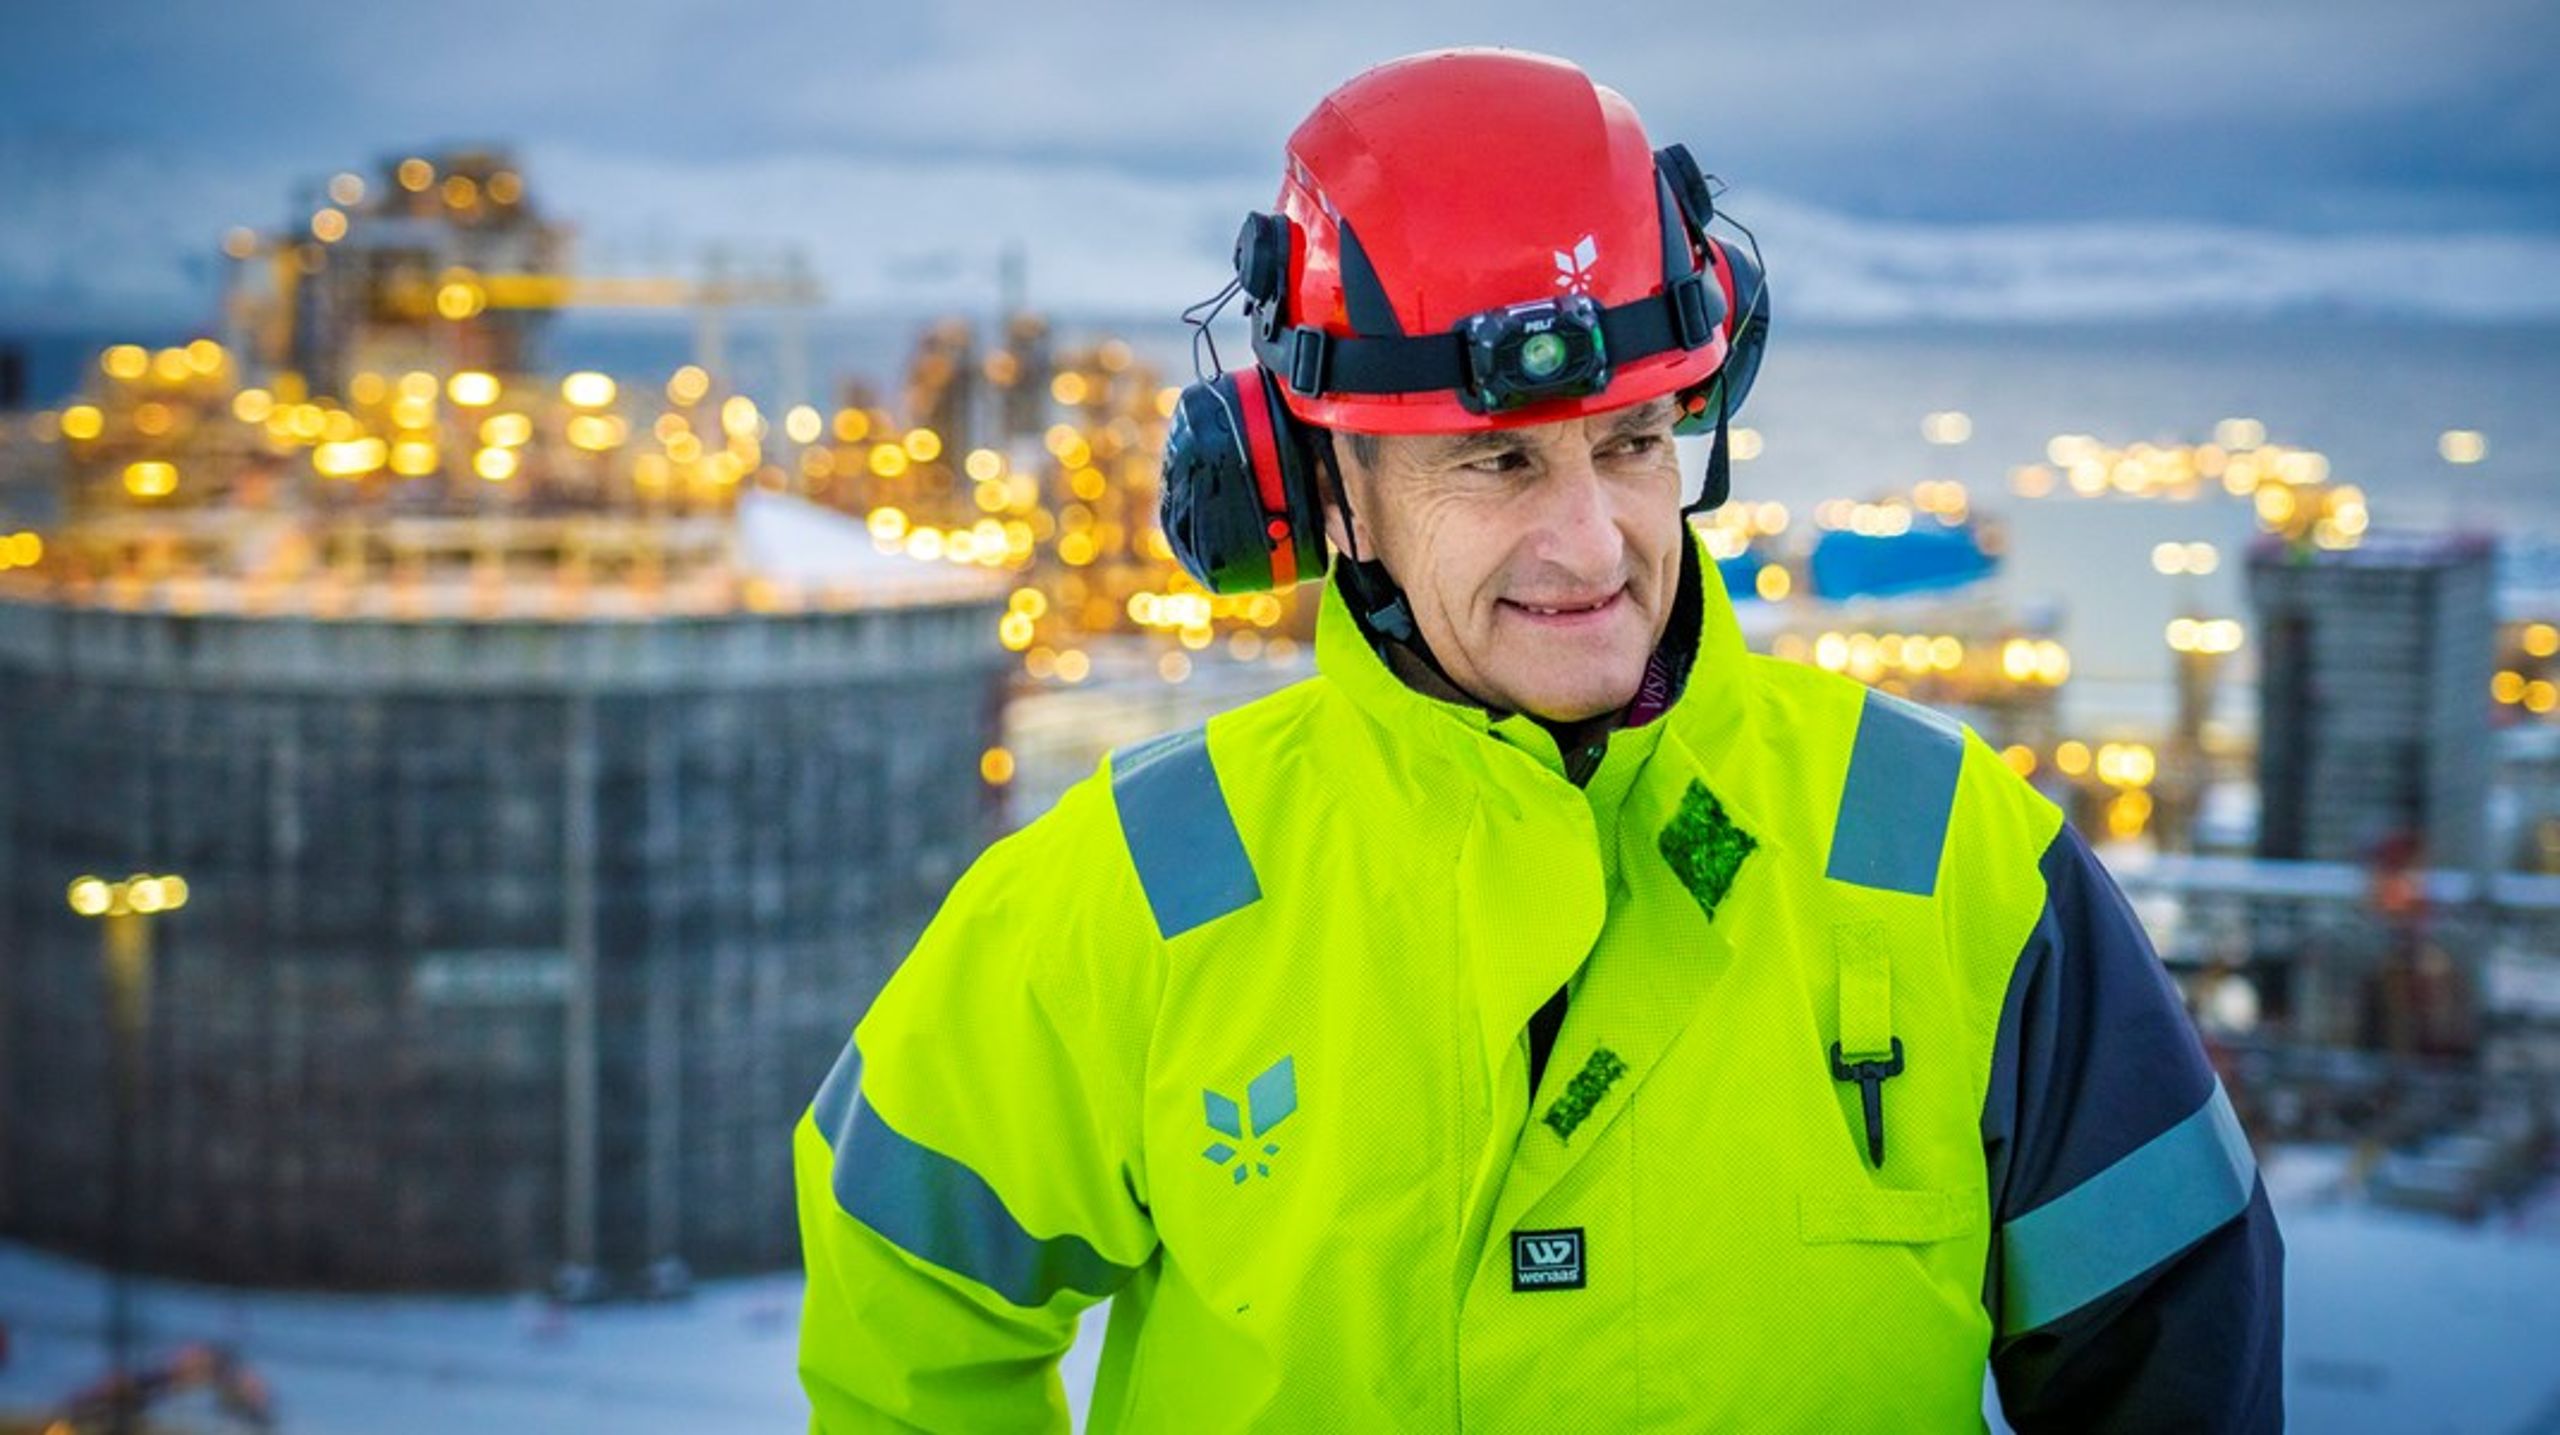 Statsminister Jonas Gahr Støre (Ap) besøkte Hammerfest LNG på Melkøya tidligere i år. Han forsvarer prosjektet Snøhvit Future som et viktig industriprosjekt, men har en viktig floke å løse med Senterpartiets motstand og kraftsituasjonen i Nord-Norge.